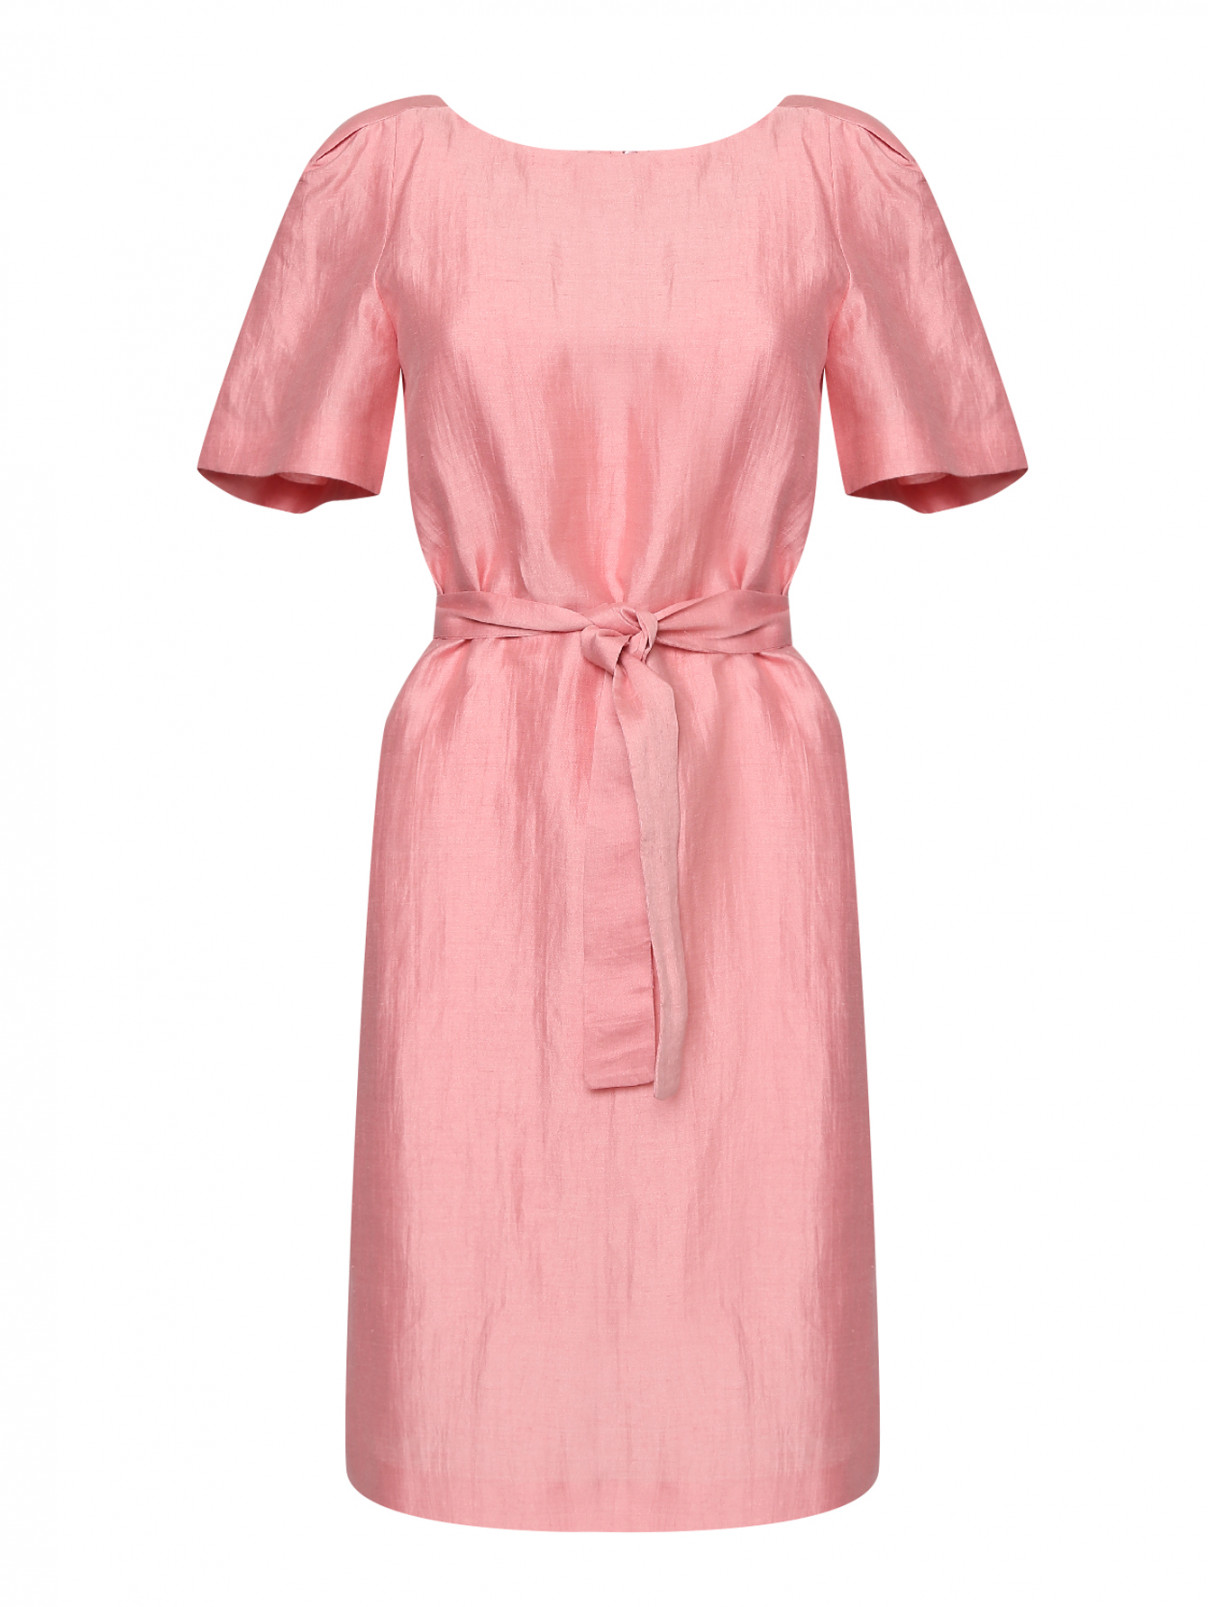 Платье со складками на рукавах,  изо льна Weekend Max Mara  –  Общий вид  – Цвет:  Розовый